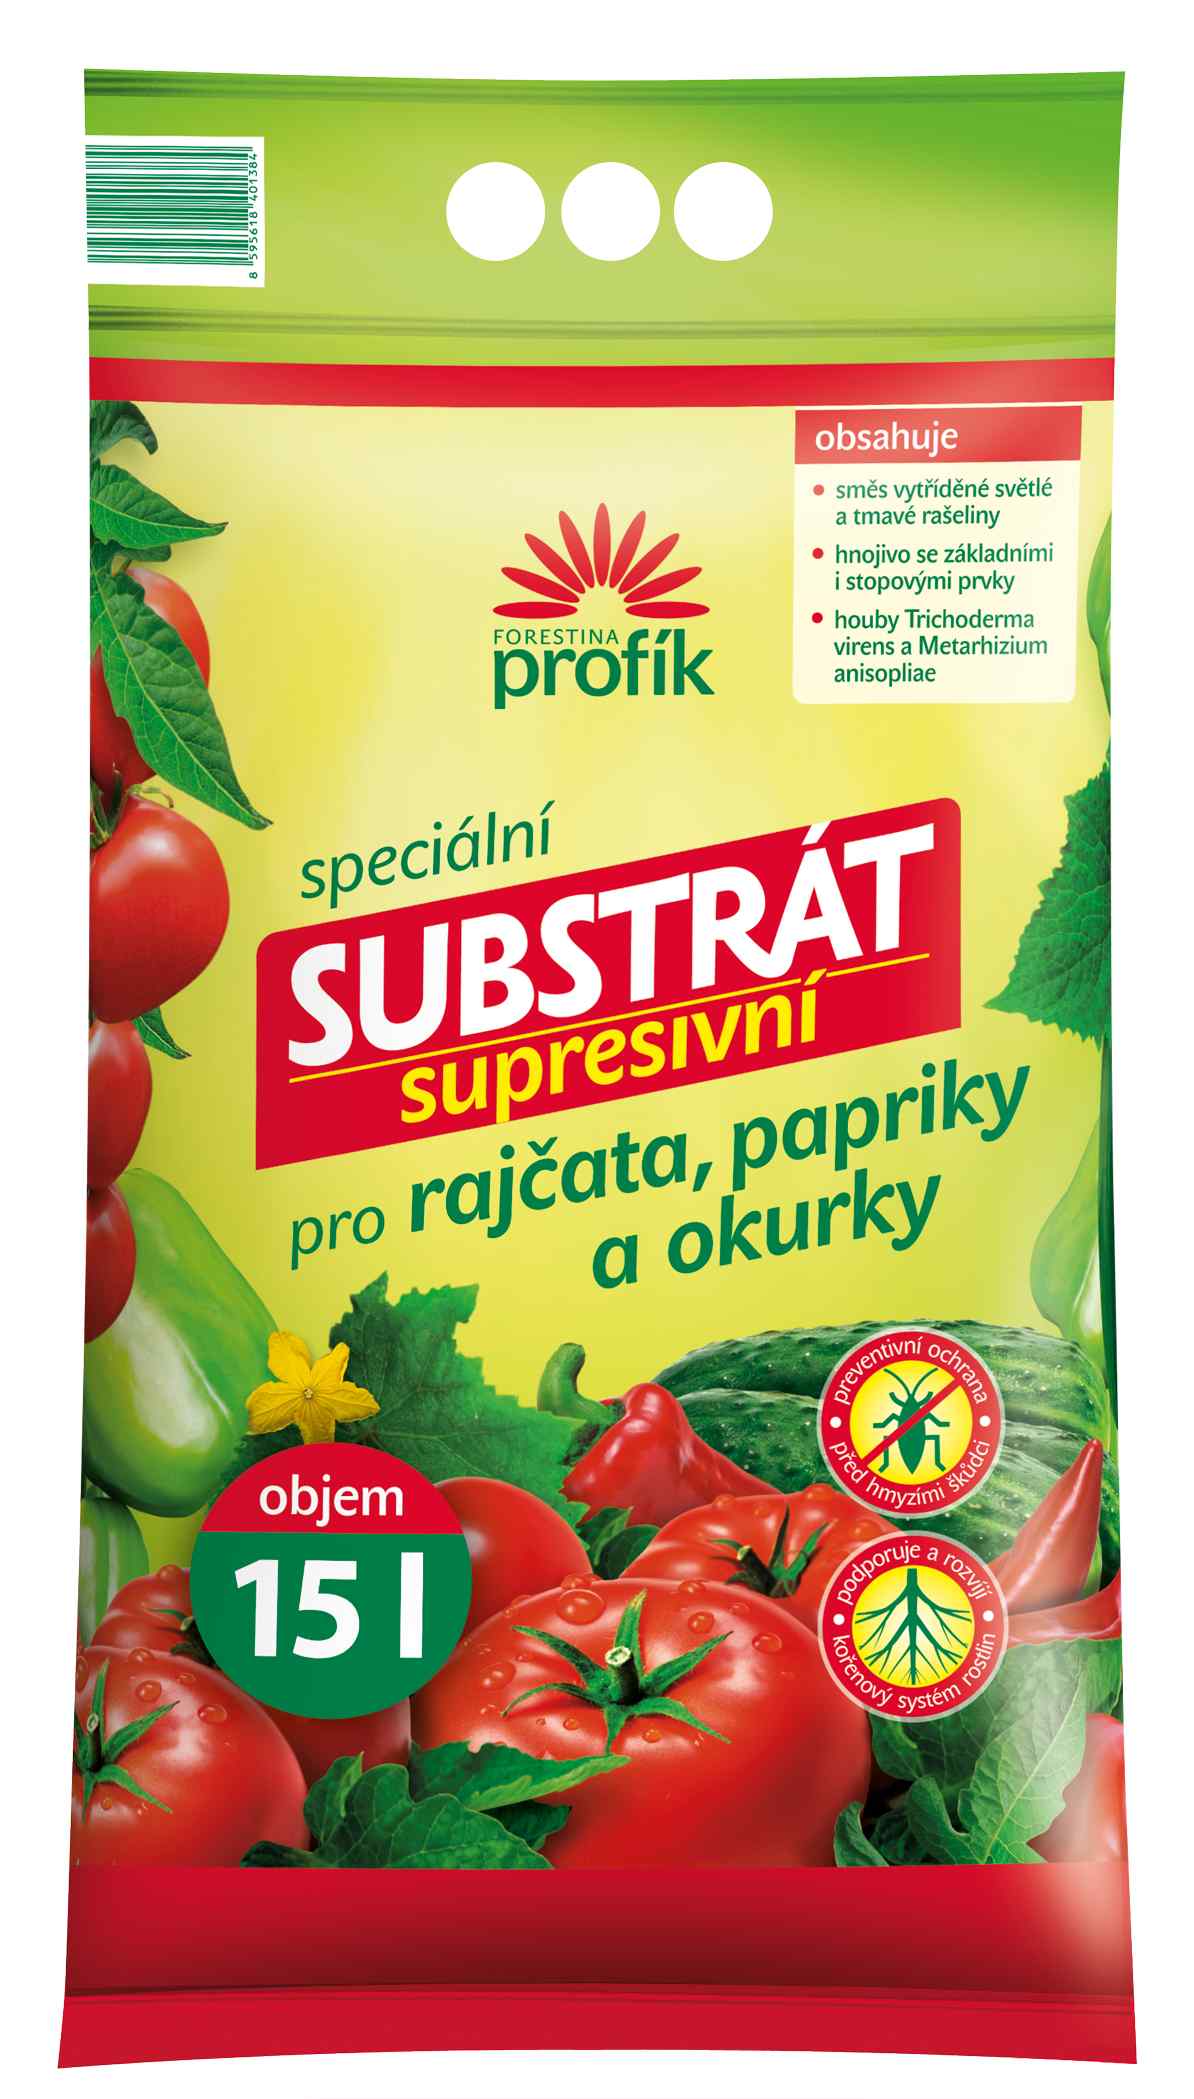 Supresivní substrát pro rajčata, papriky a okurky Forestina PROFÍK 15 l